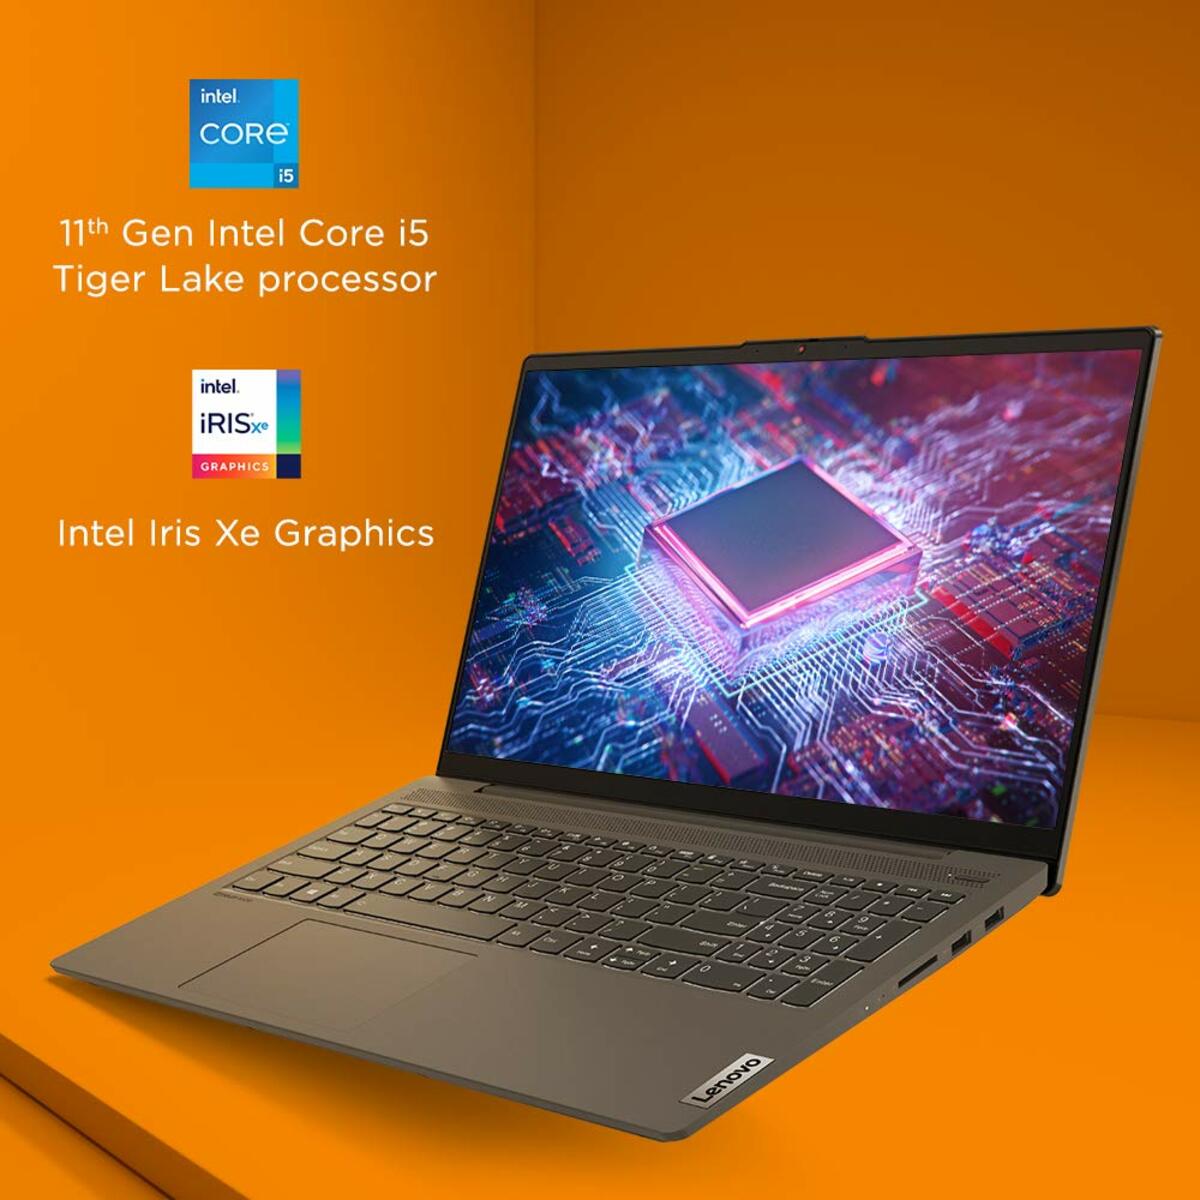 Lenovo Notebook Slim5 Core i5 11th Gen Win10 15.6" + MS Office Graphite Grey